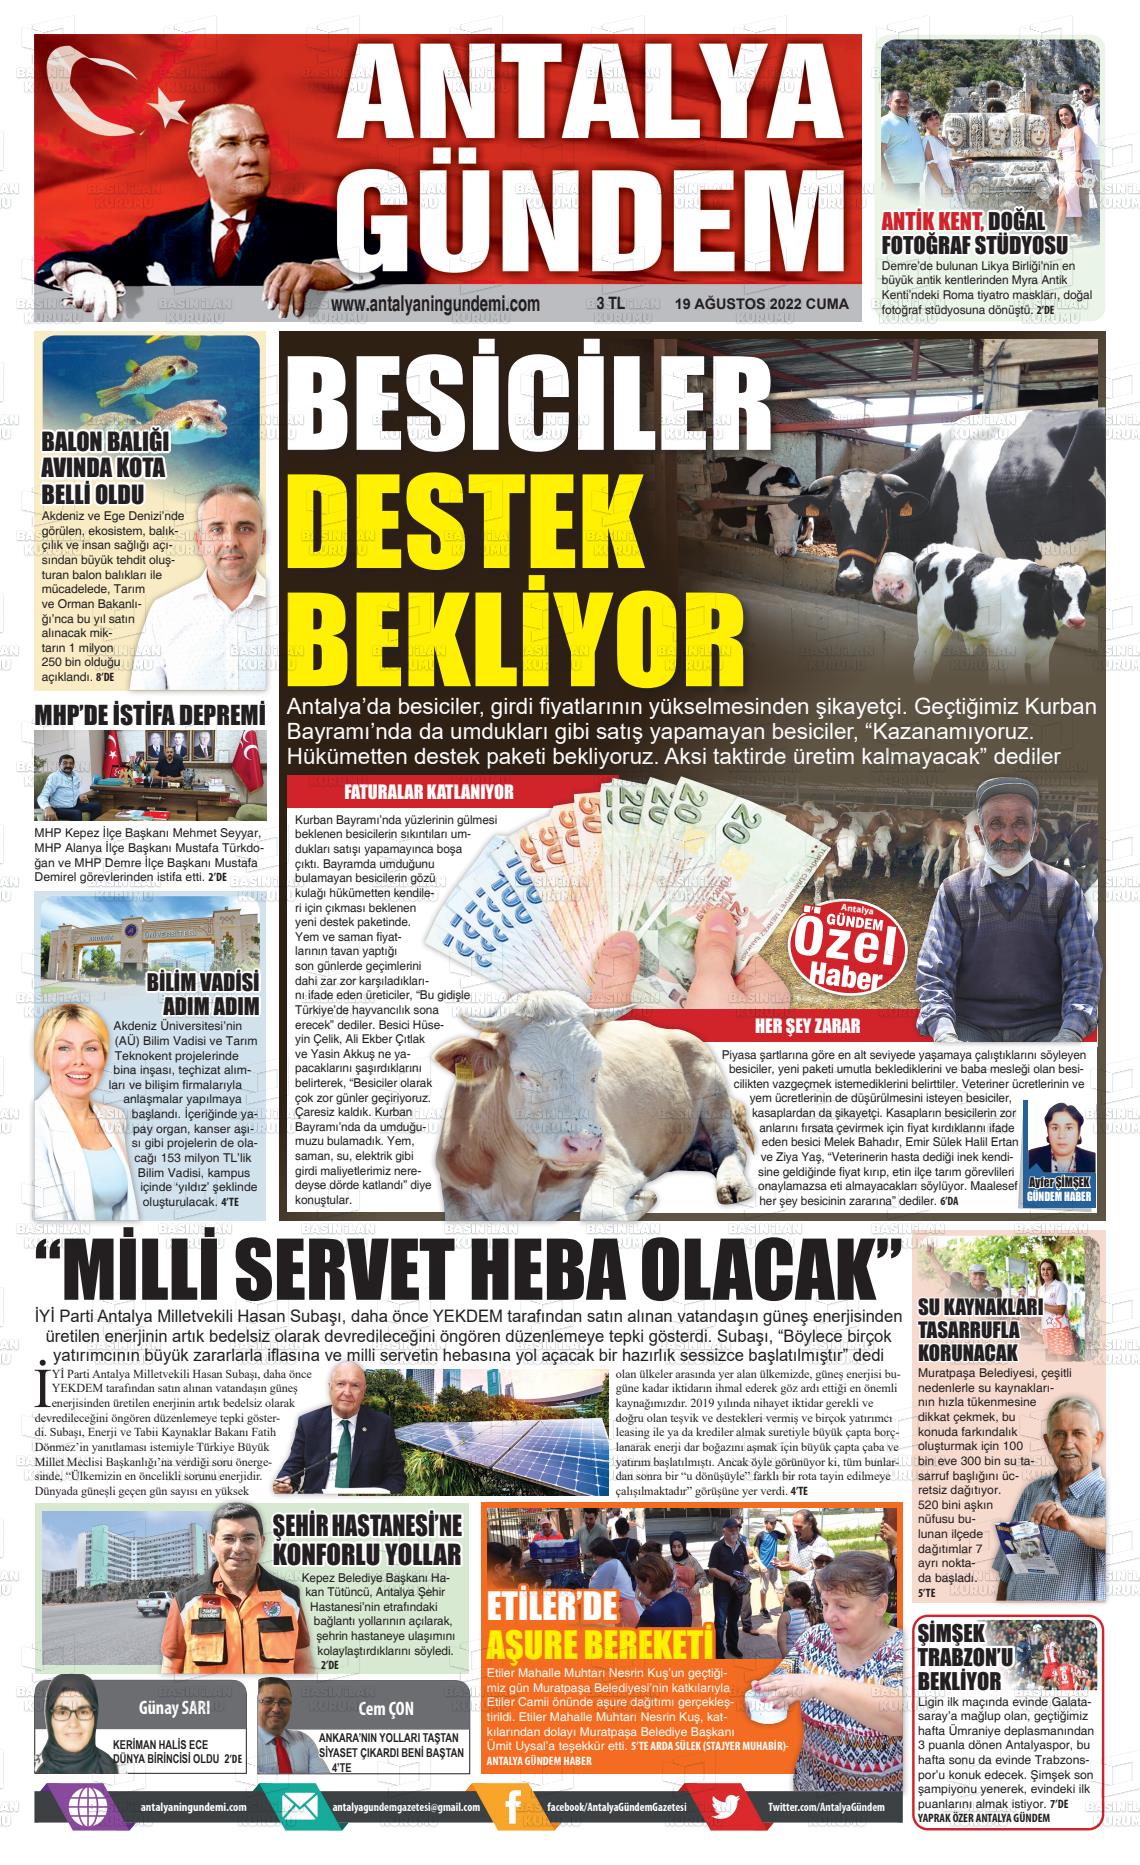 Antalya'nın Gündemi Gazete Manşeti